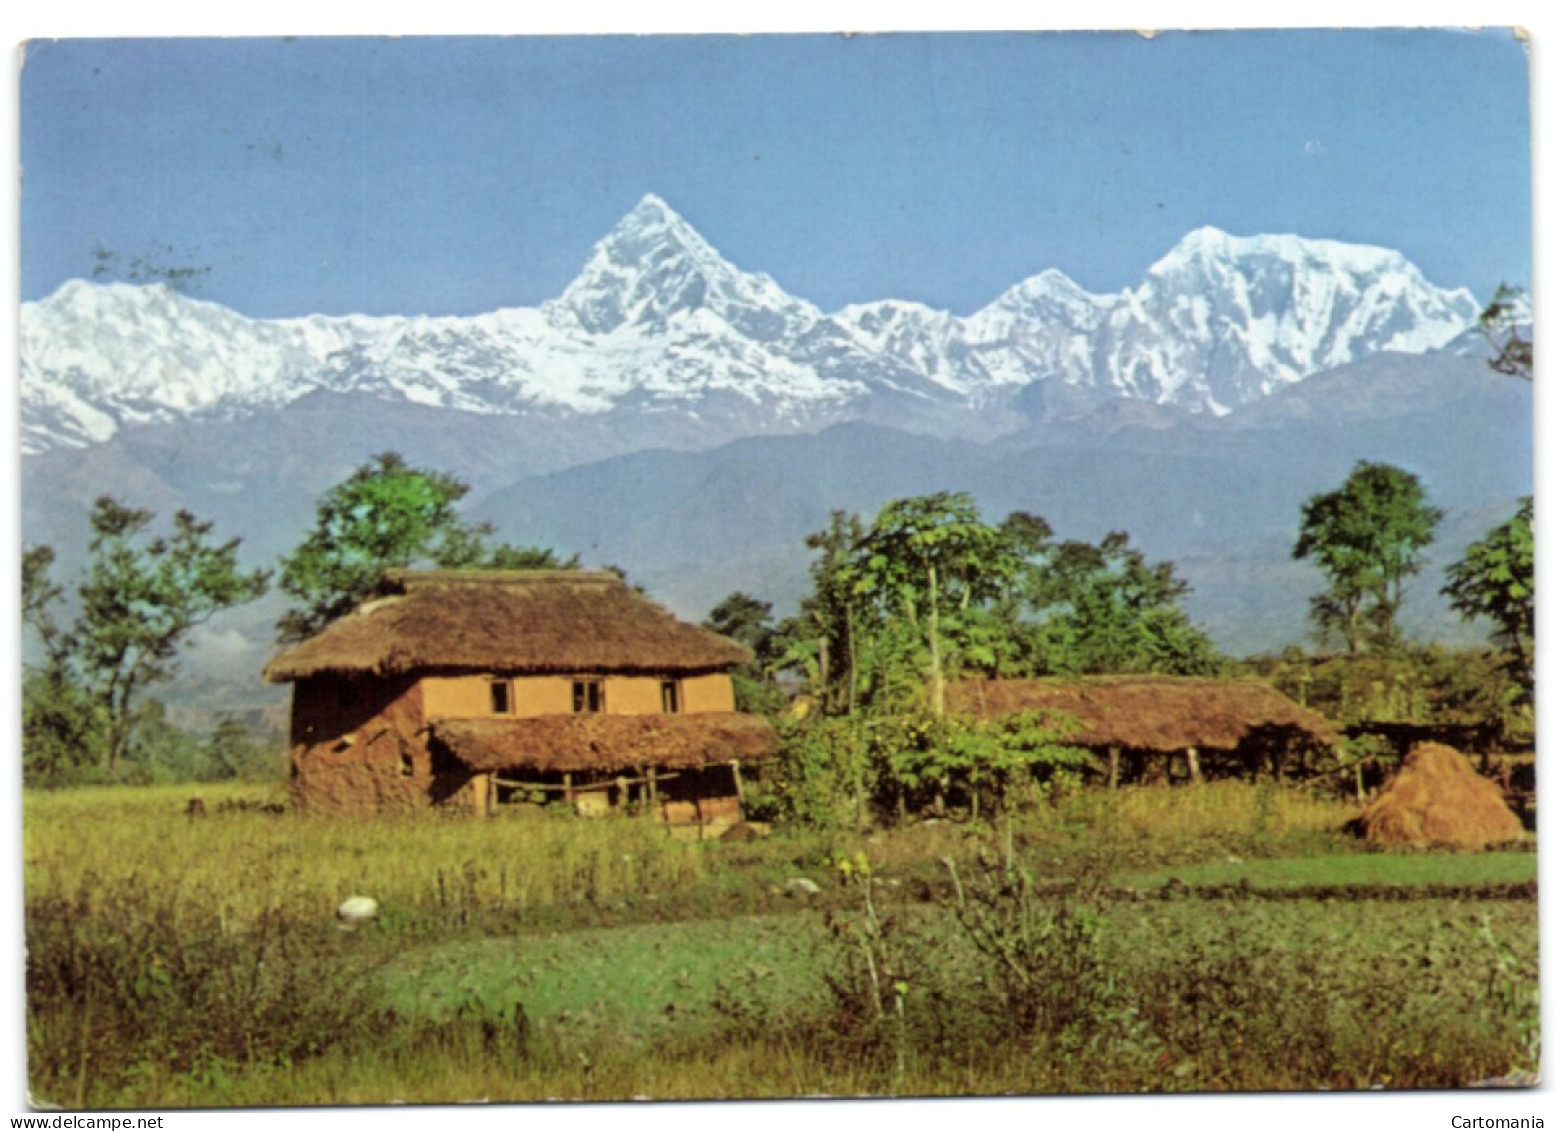 Machpuchare And The Annapurna Range From Pokhara - Nepal